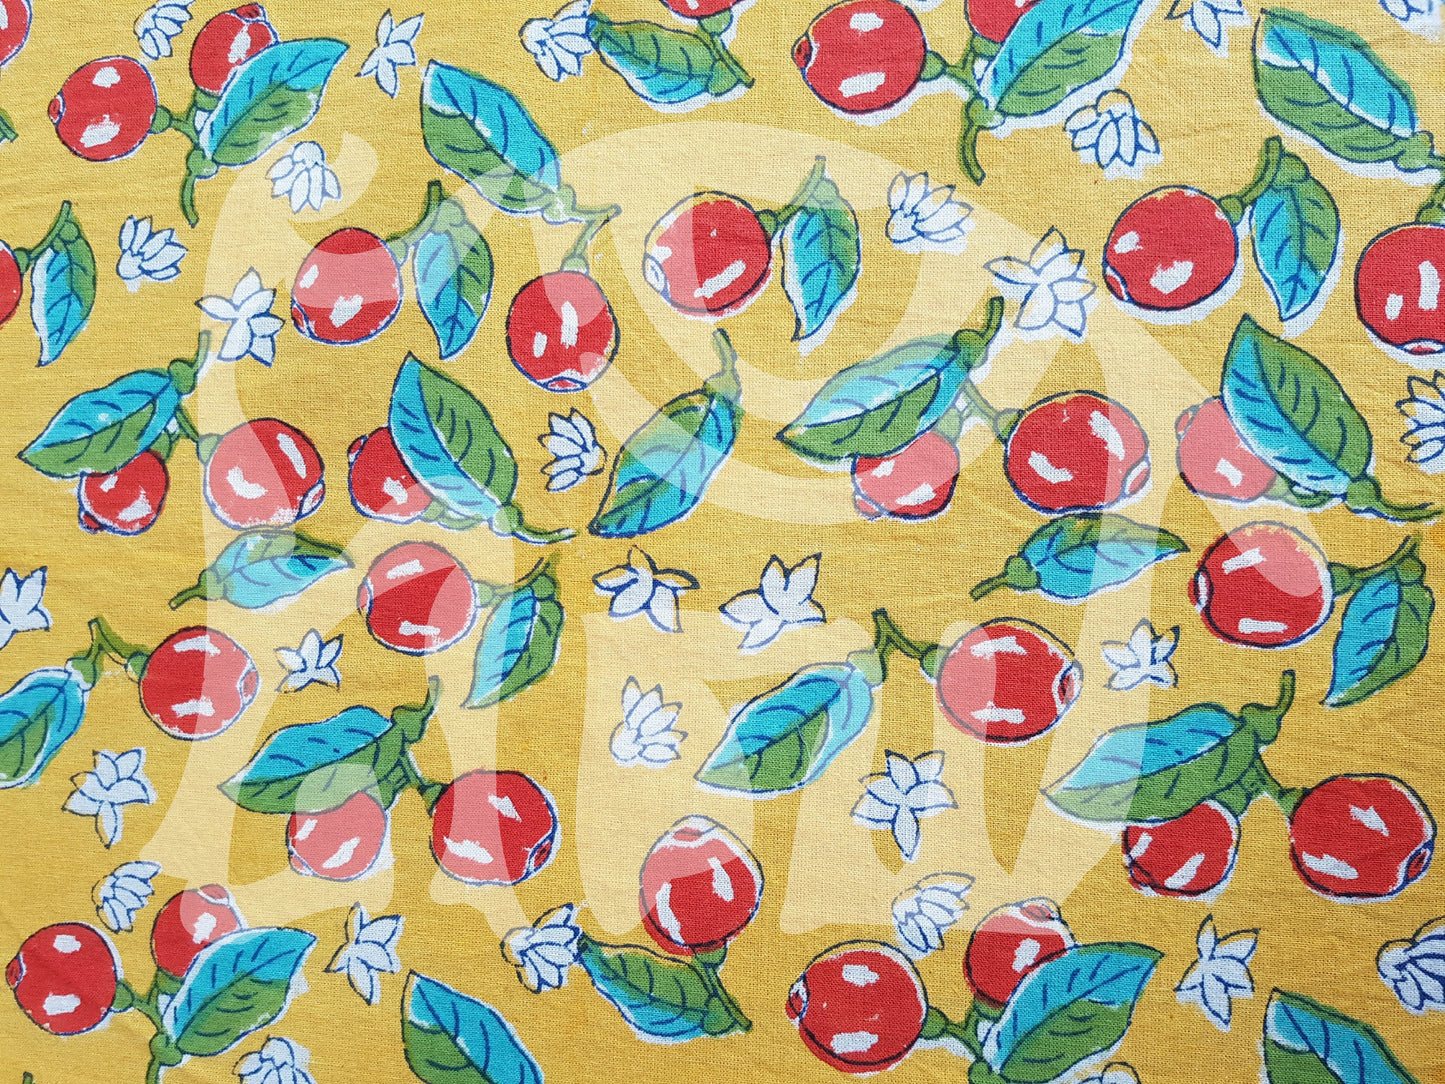 Detalle de estampado de sobrecama 100% algodón estampado a mano, base amarilla con diseño de cerezas rojas con hojas verdes. Hecho en la India.